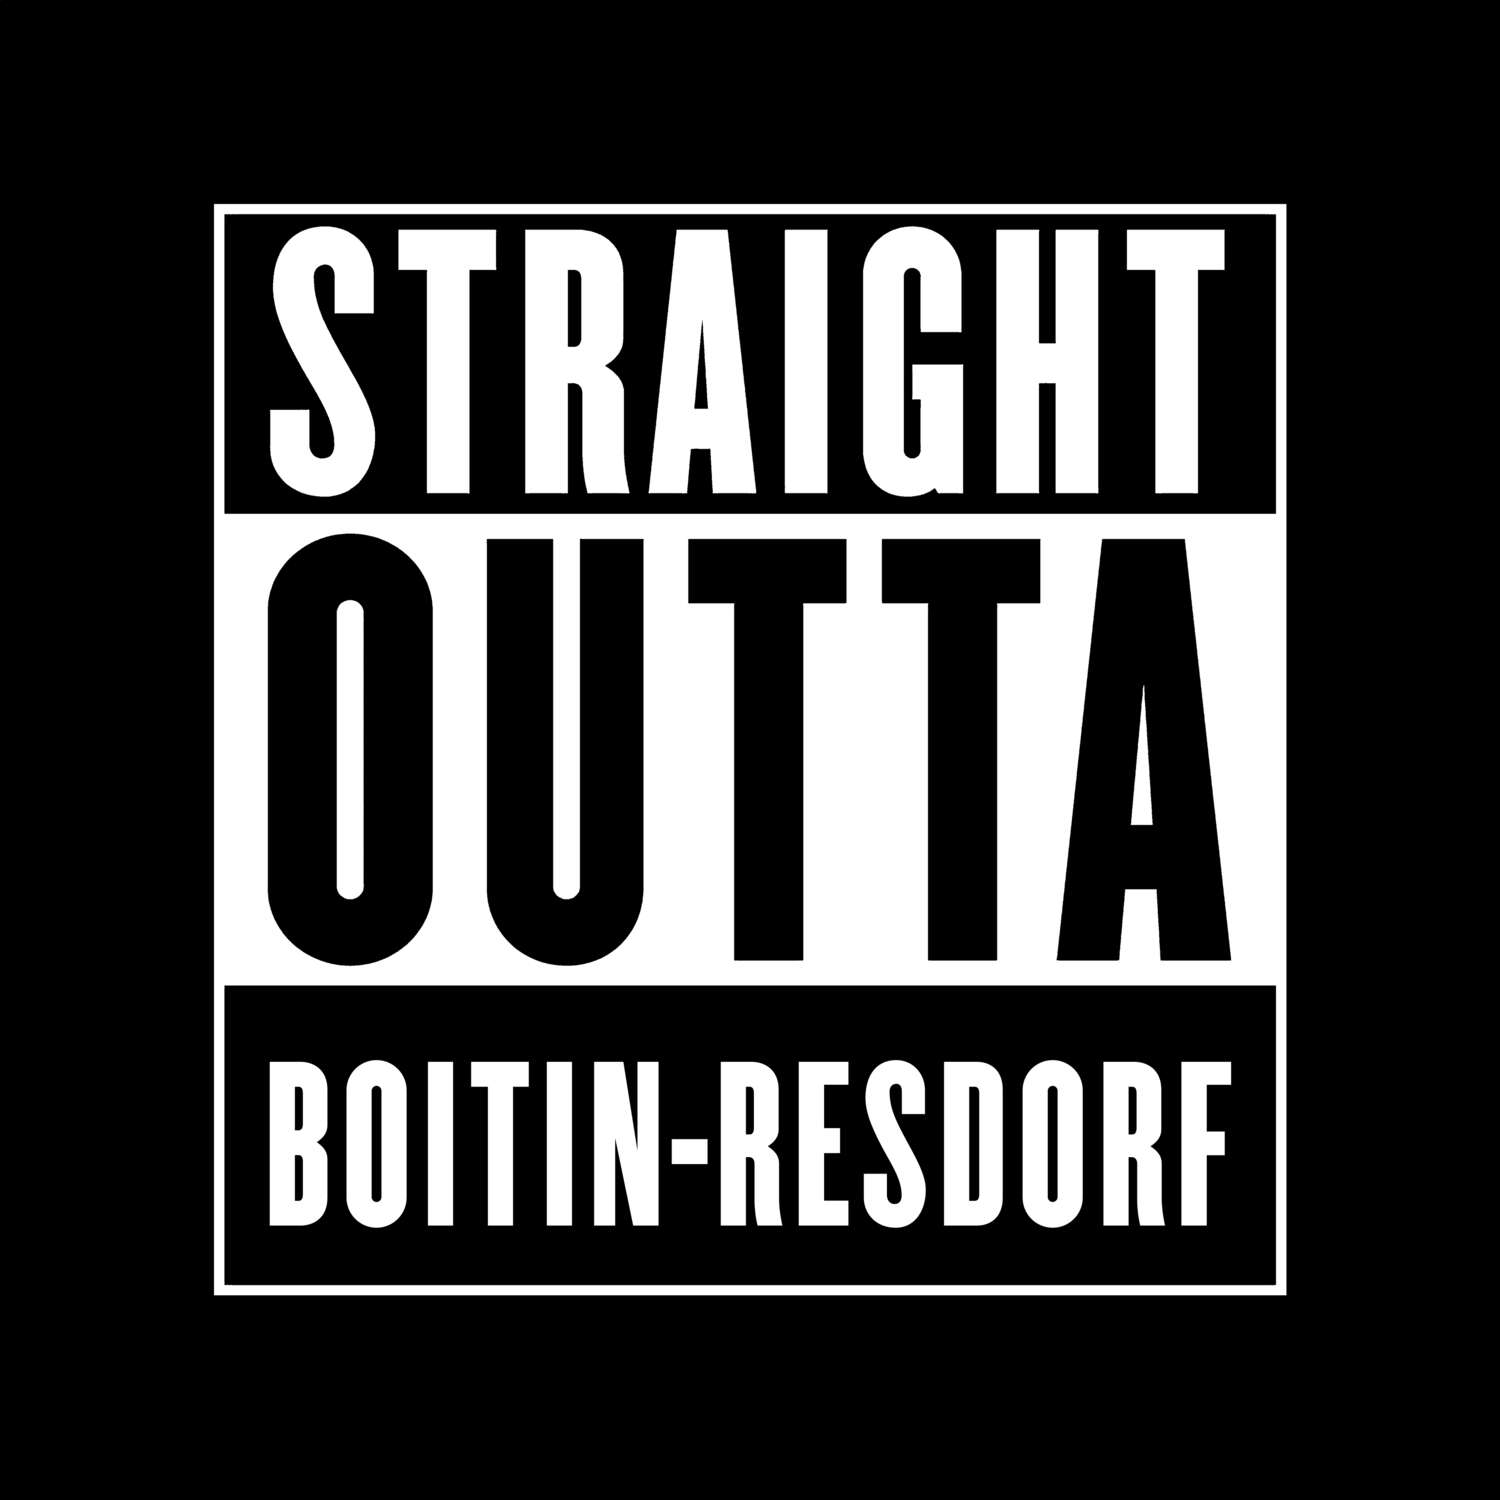 Boitin-Resdorf T-Shirt »Straight Outta«